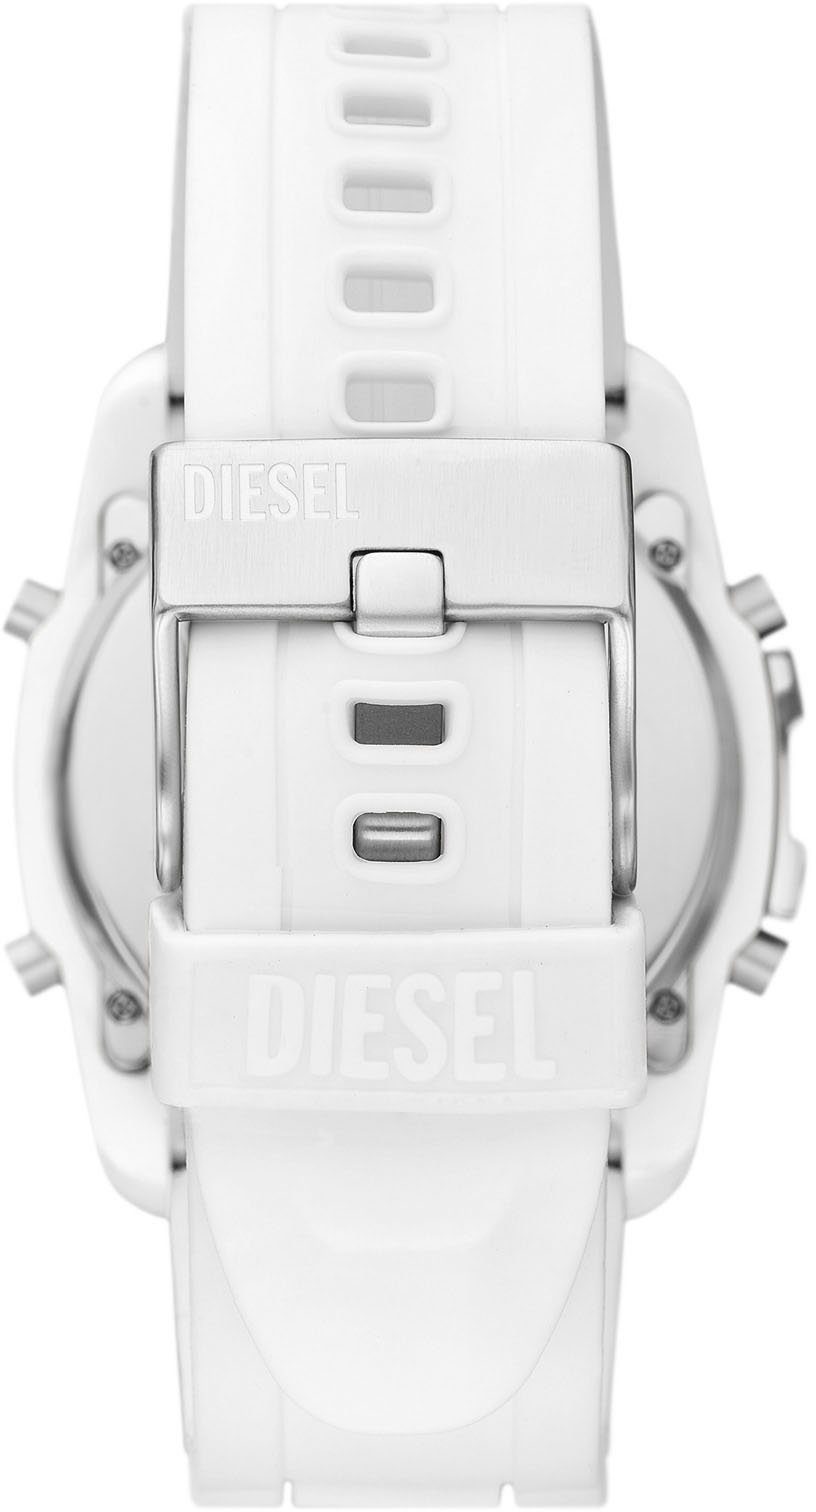 Digitaluhr CHIEF, Diesel MASTER DZ2157